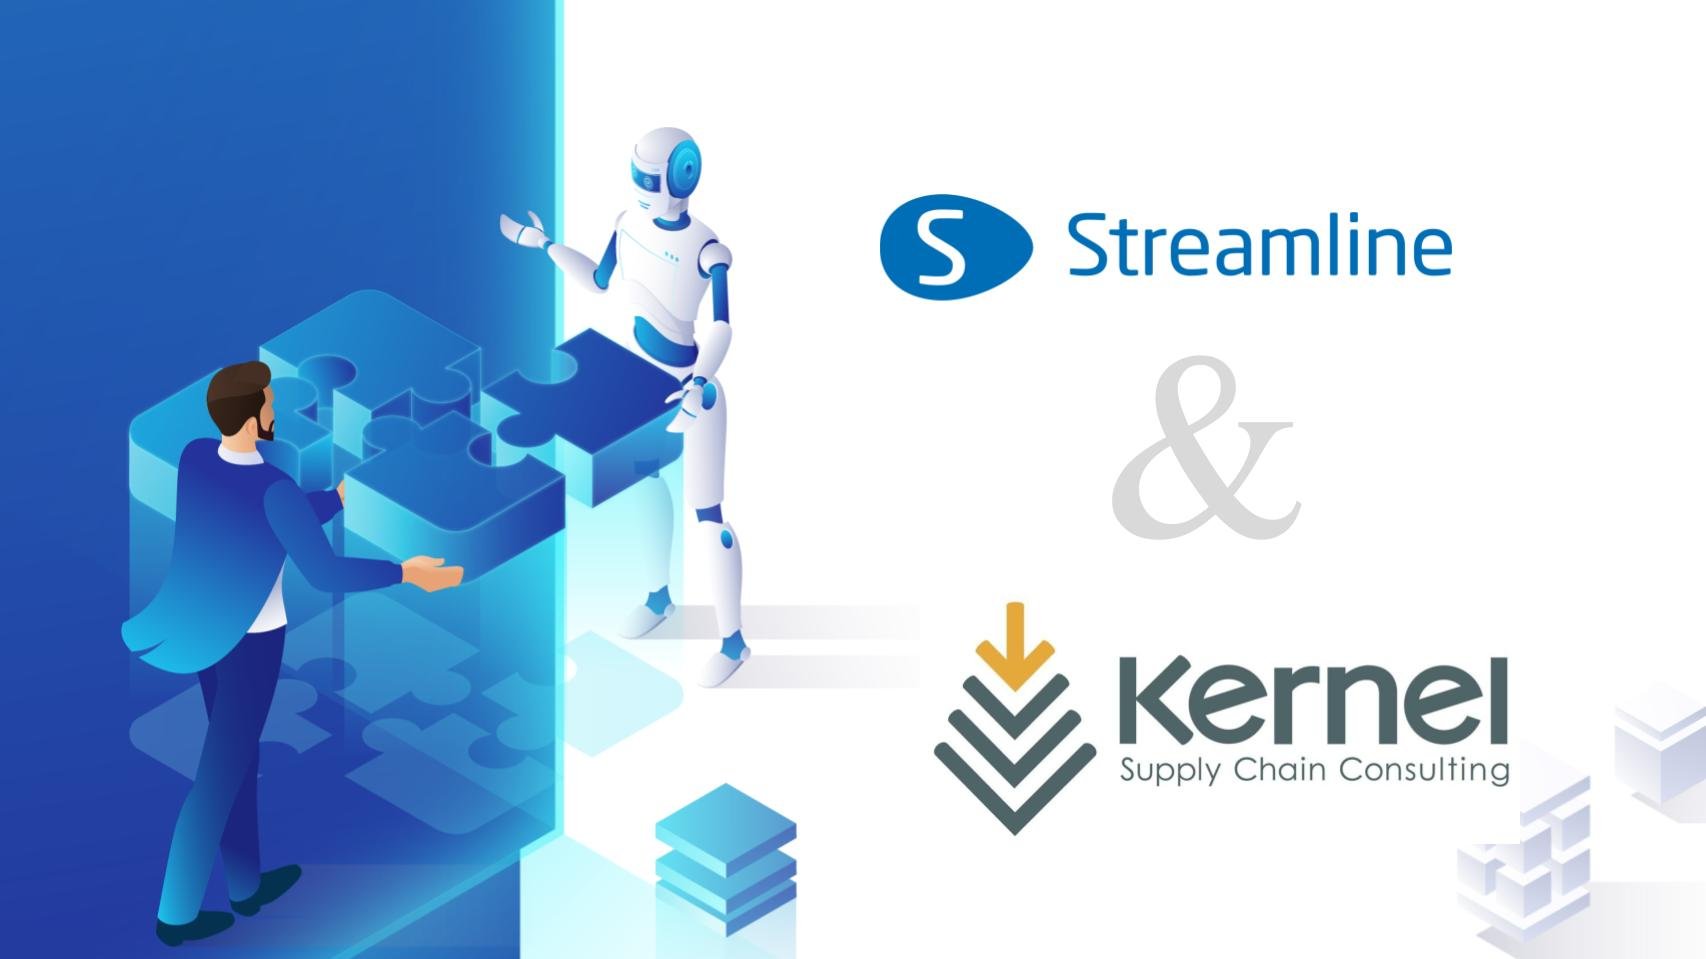 GMDH Streamline và Kernel Supply Chain Consulting công bố mối quan hệ hợp tác có giá trị